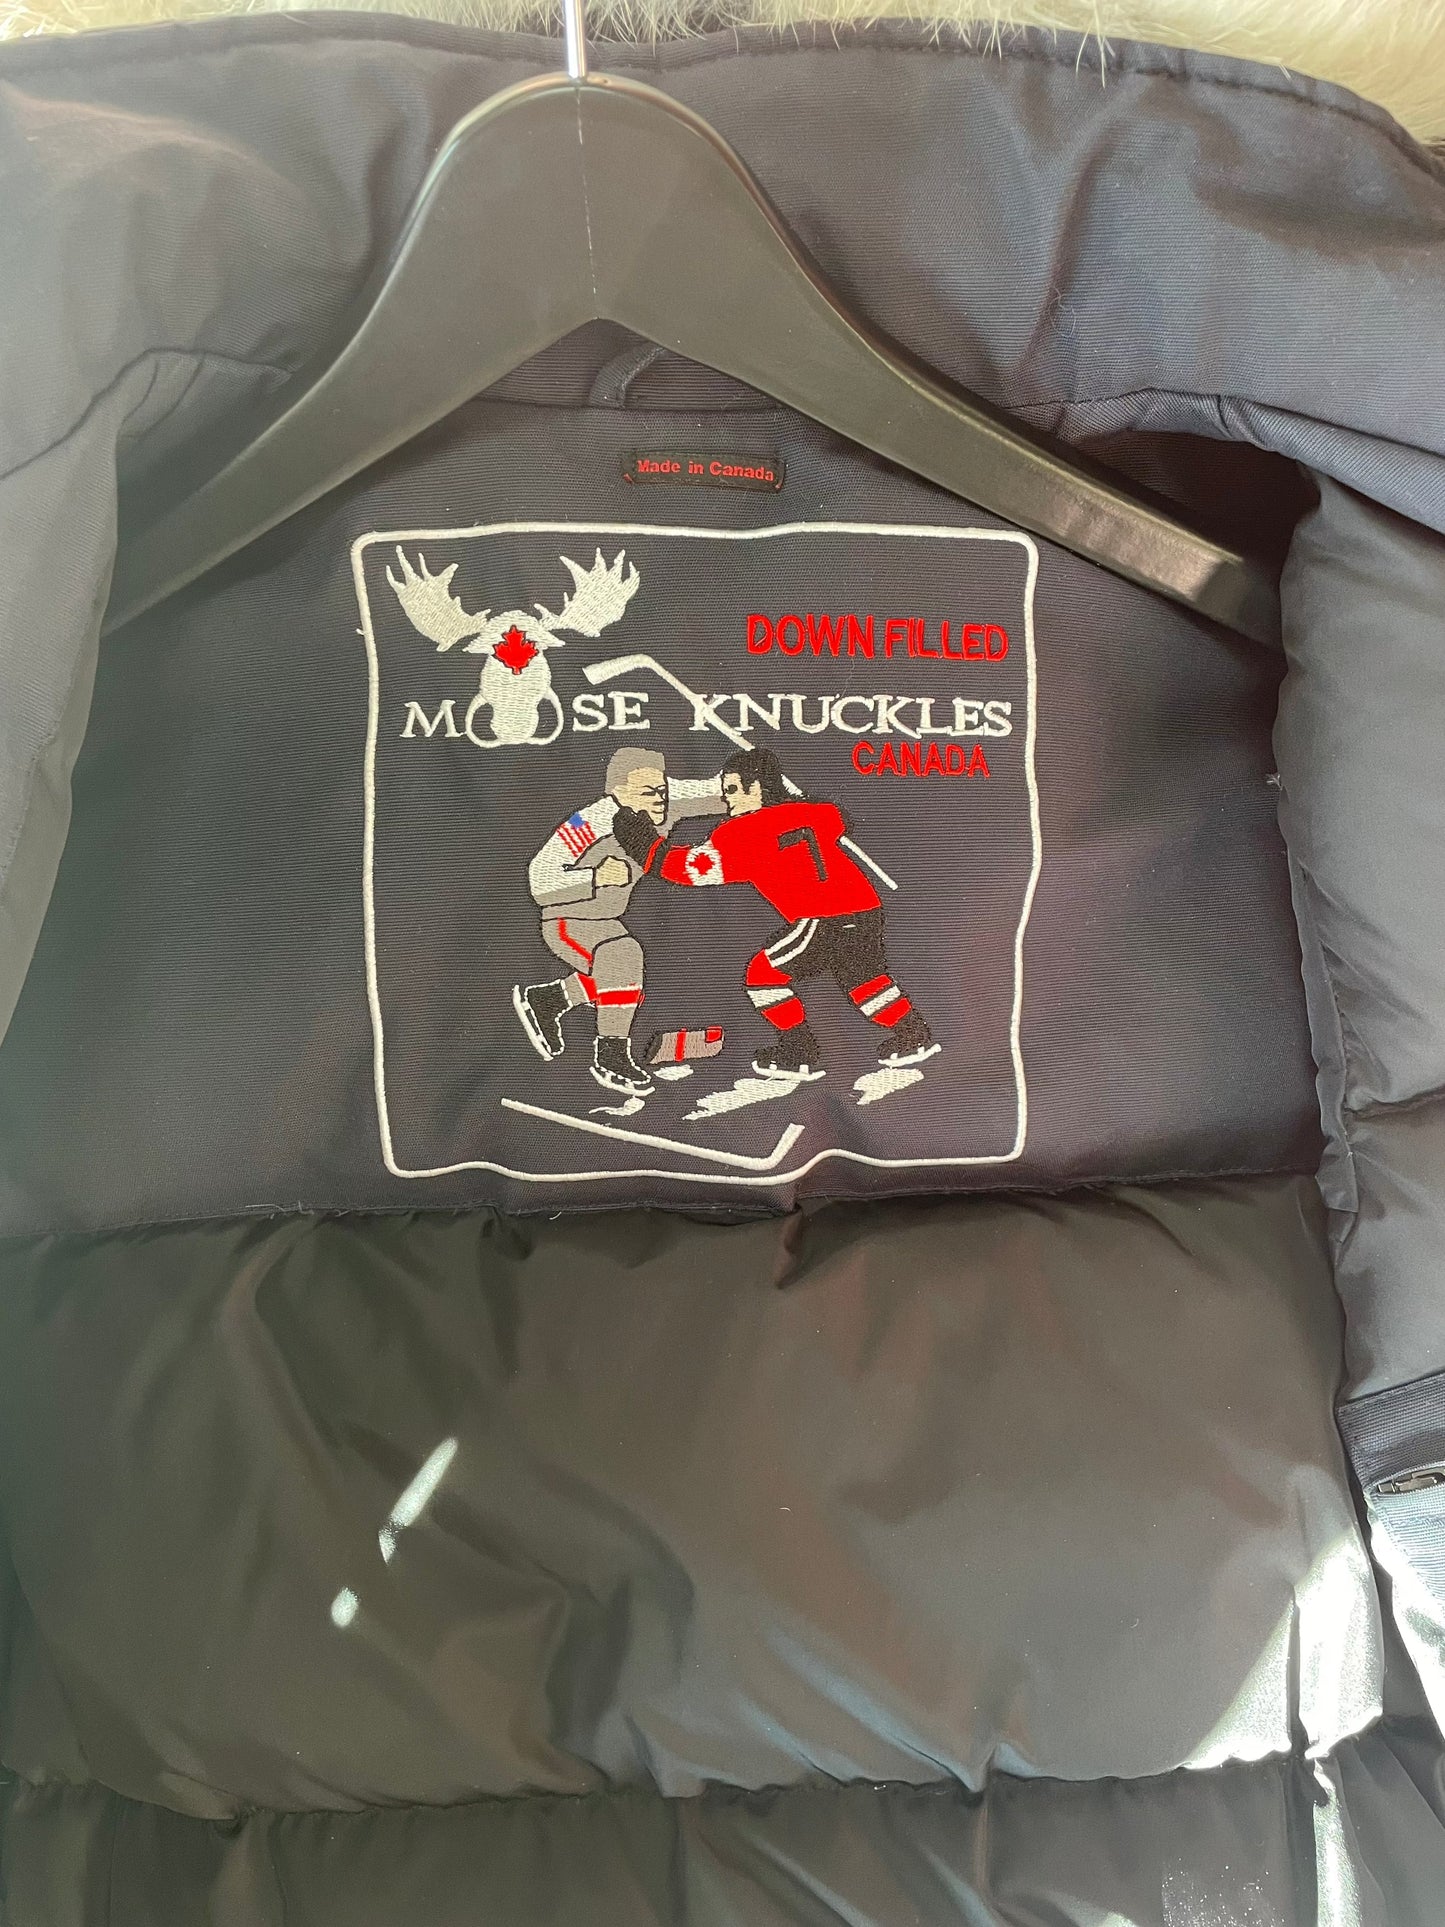 Moose Knuckles "Original Stirling Parka Fur" Coat